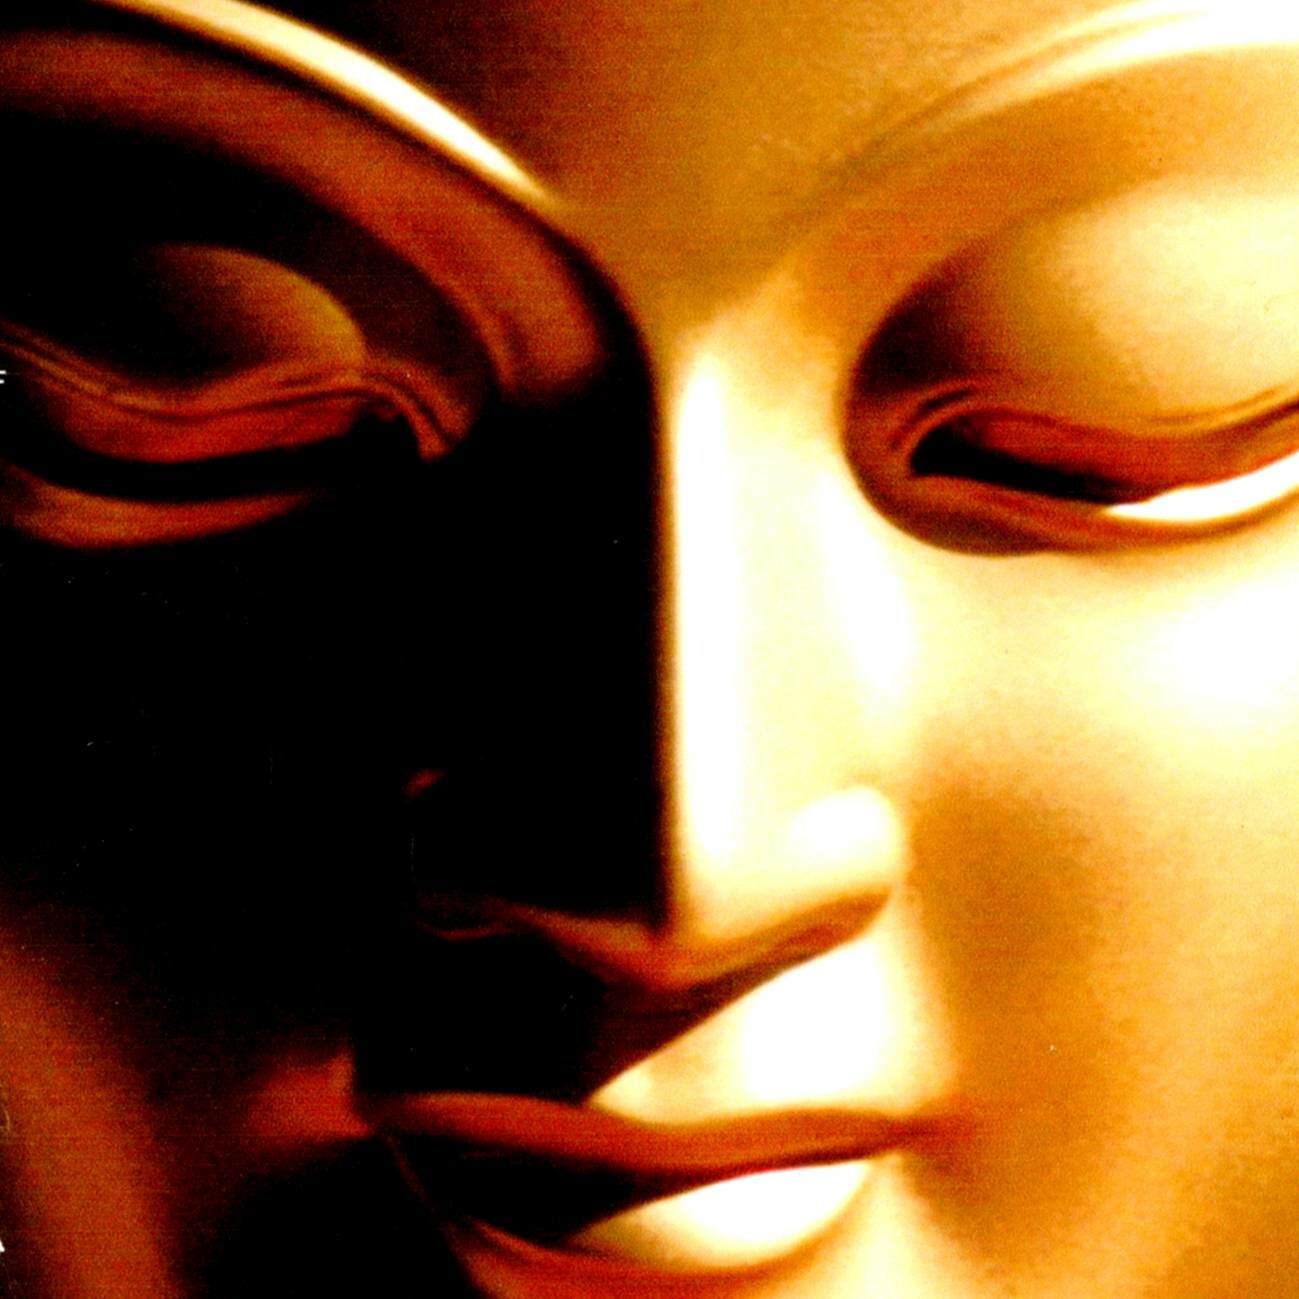 Die Botschaft der buddhistischen Religion: Finde zu dir selbst. Finden Sie zu uns am 27.2.